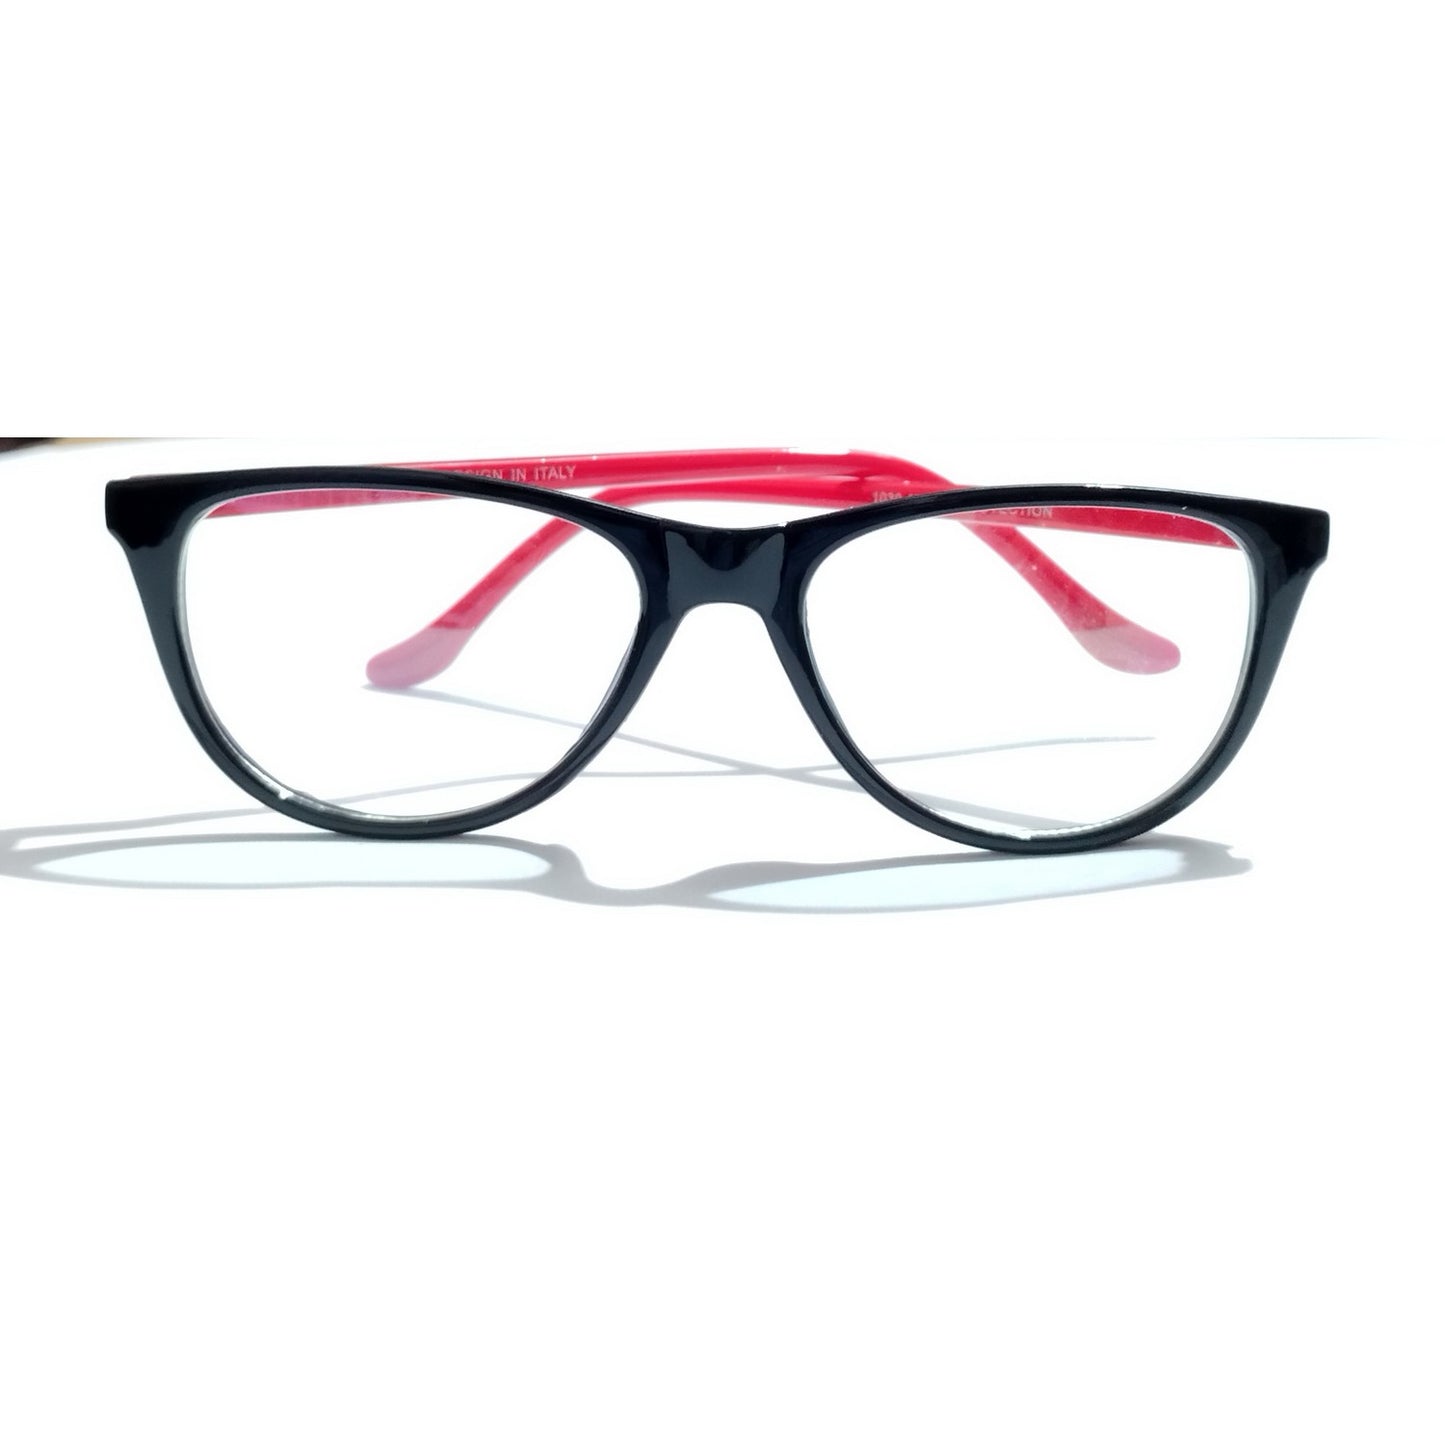 Black Front Red Side Cat Eye Glasses for Women